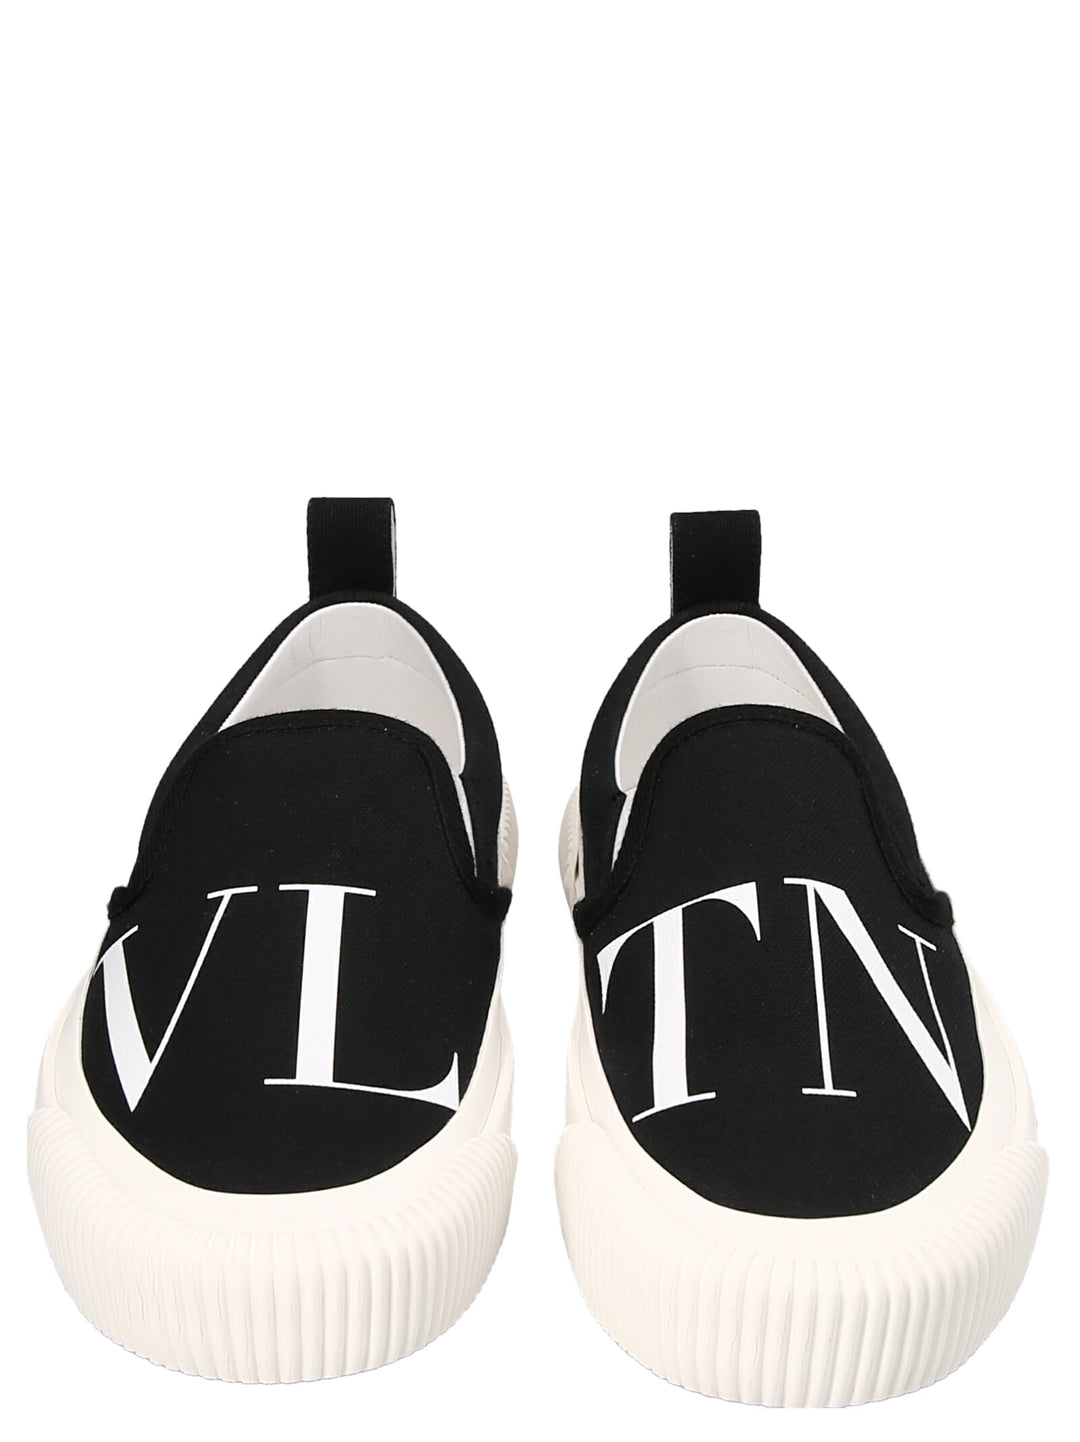 Vltn Sneakers Bianco/Nero